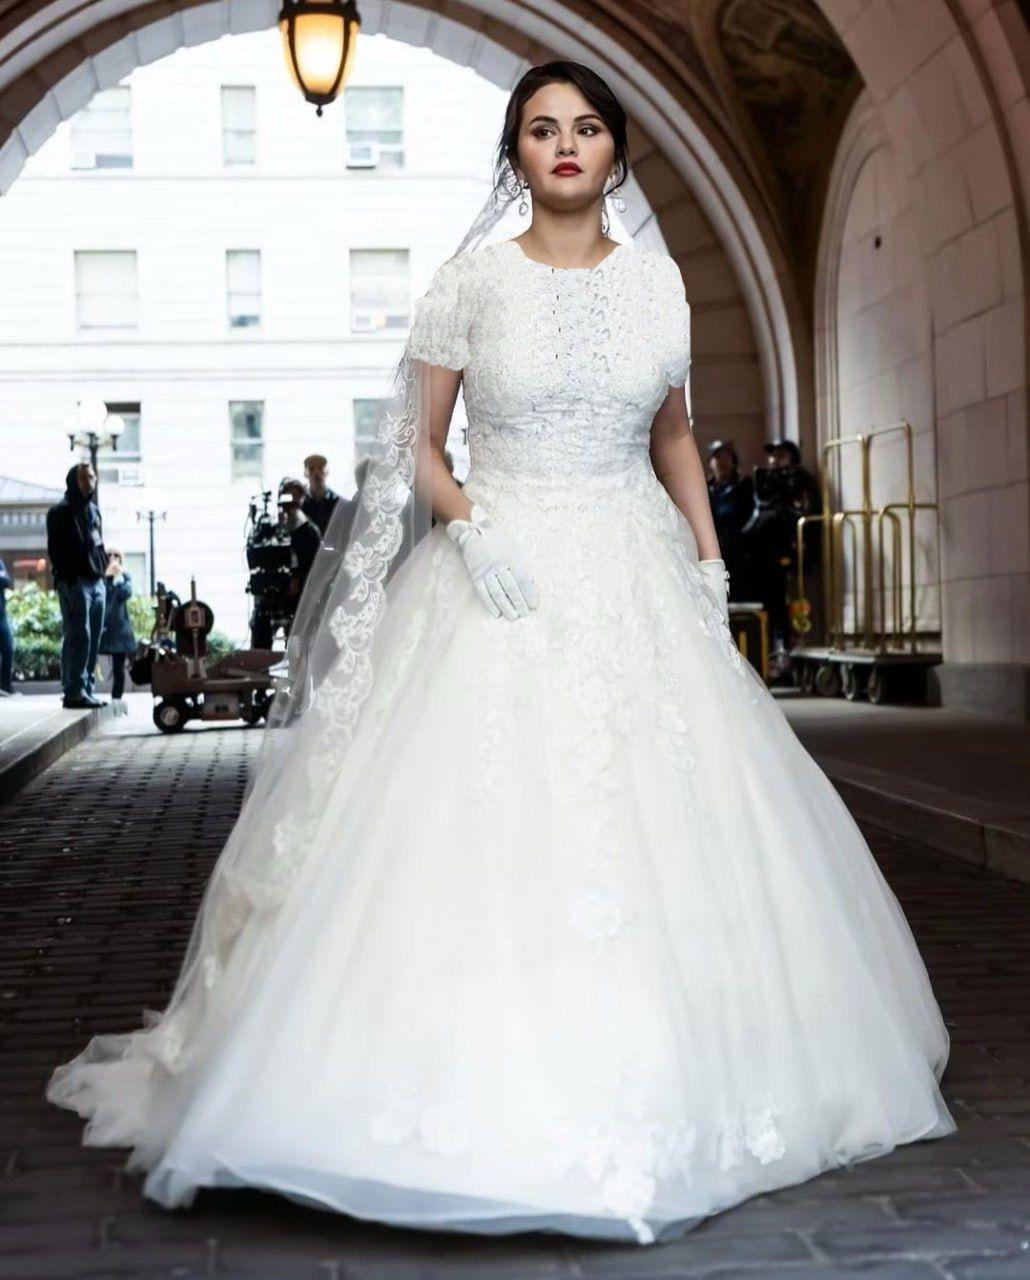 زیبایی سلنا گومز در لباس عروس صد برابر شد+ عکس